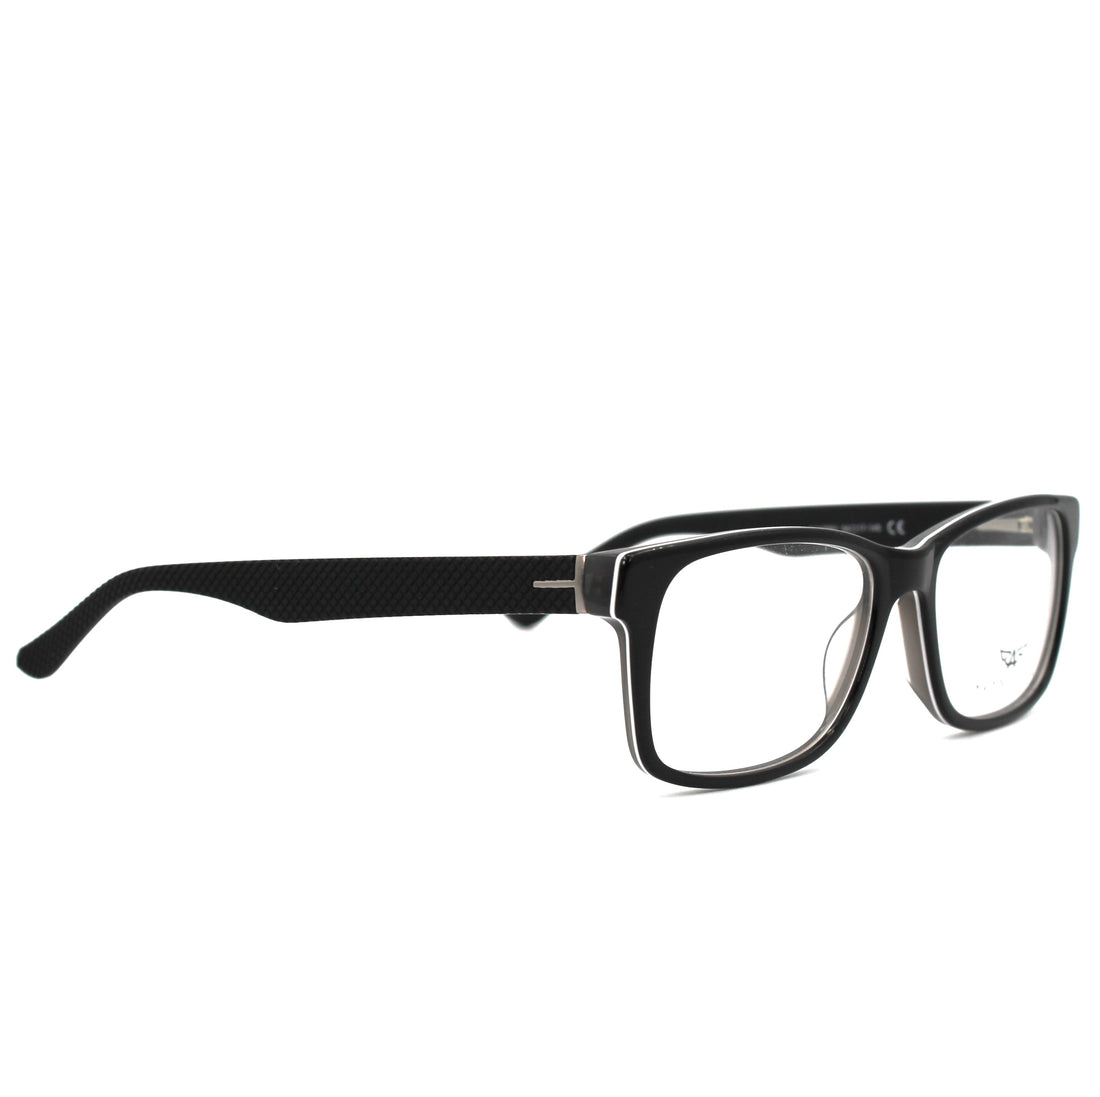 Montatura per occhiali Avanglion | Modello AV10961